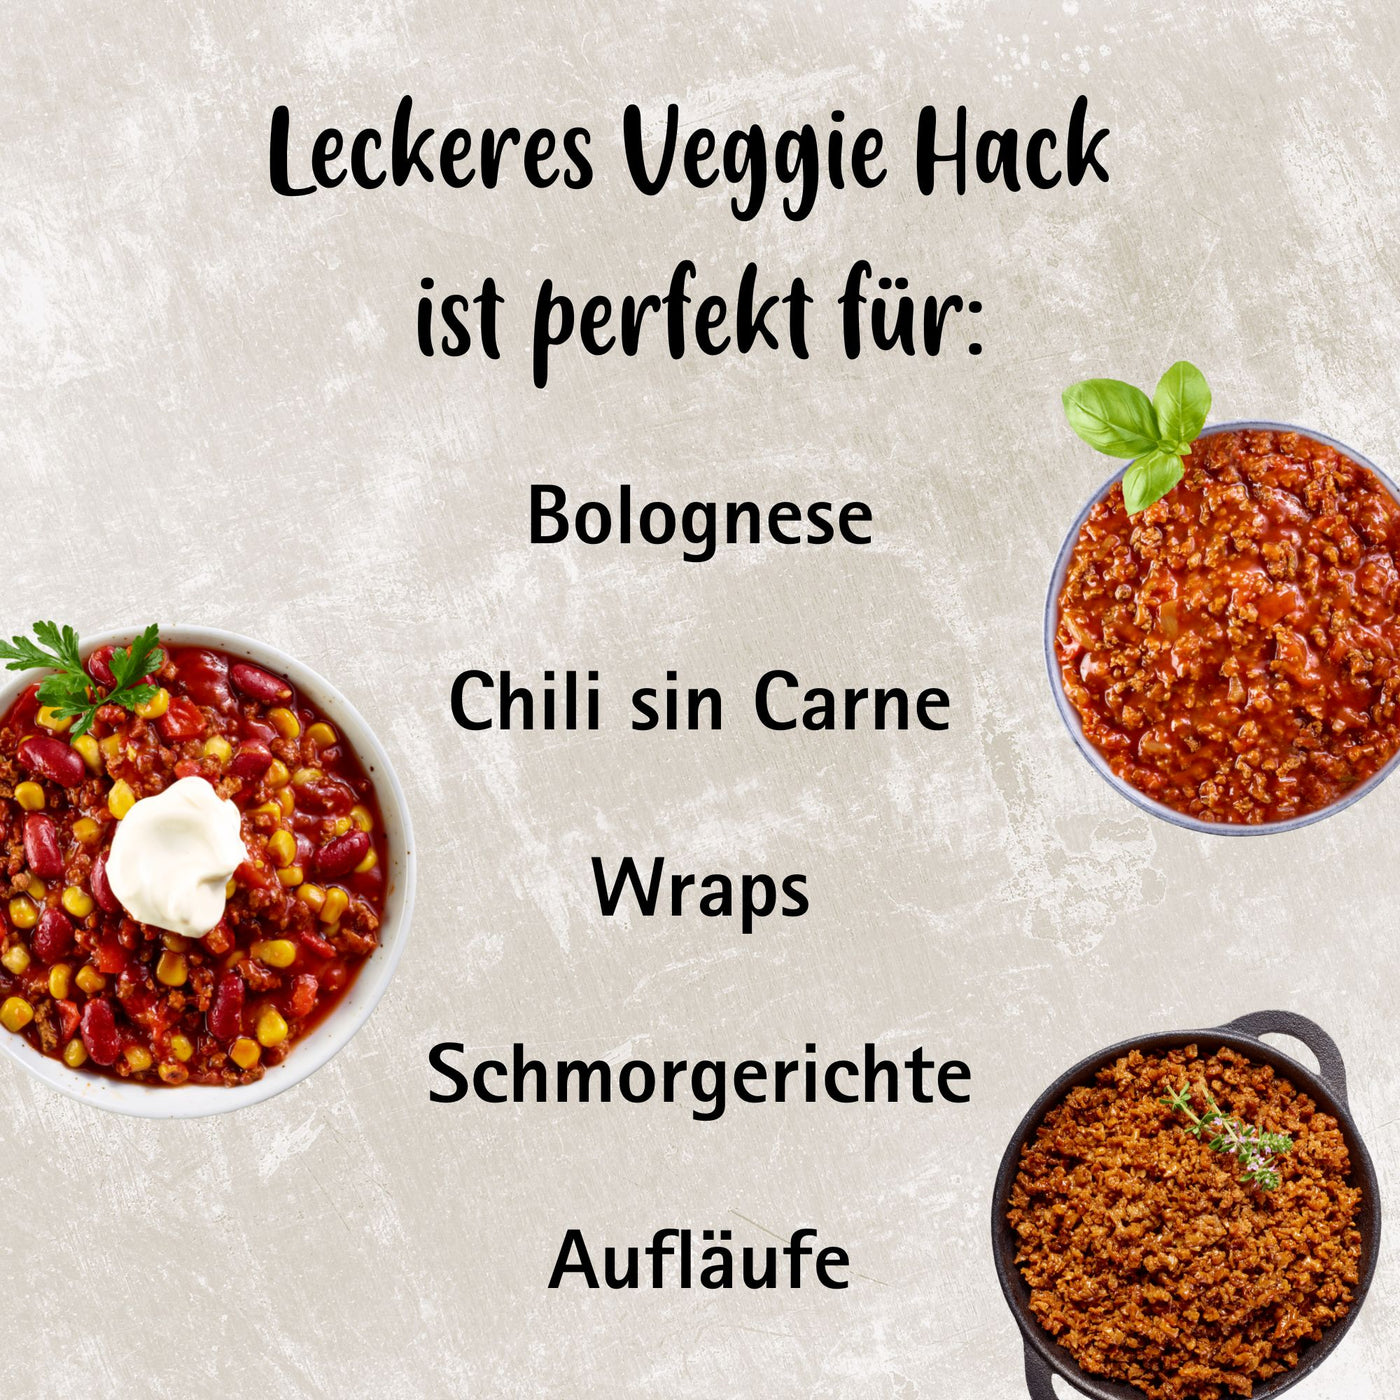 Das leckere Lotao Veggie Hack ist vielfältig einsetzbar und perfekt für Bolognese, Chili sin Carne, Wraps, Schmorgerichte und Aufläufe